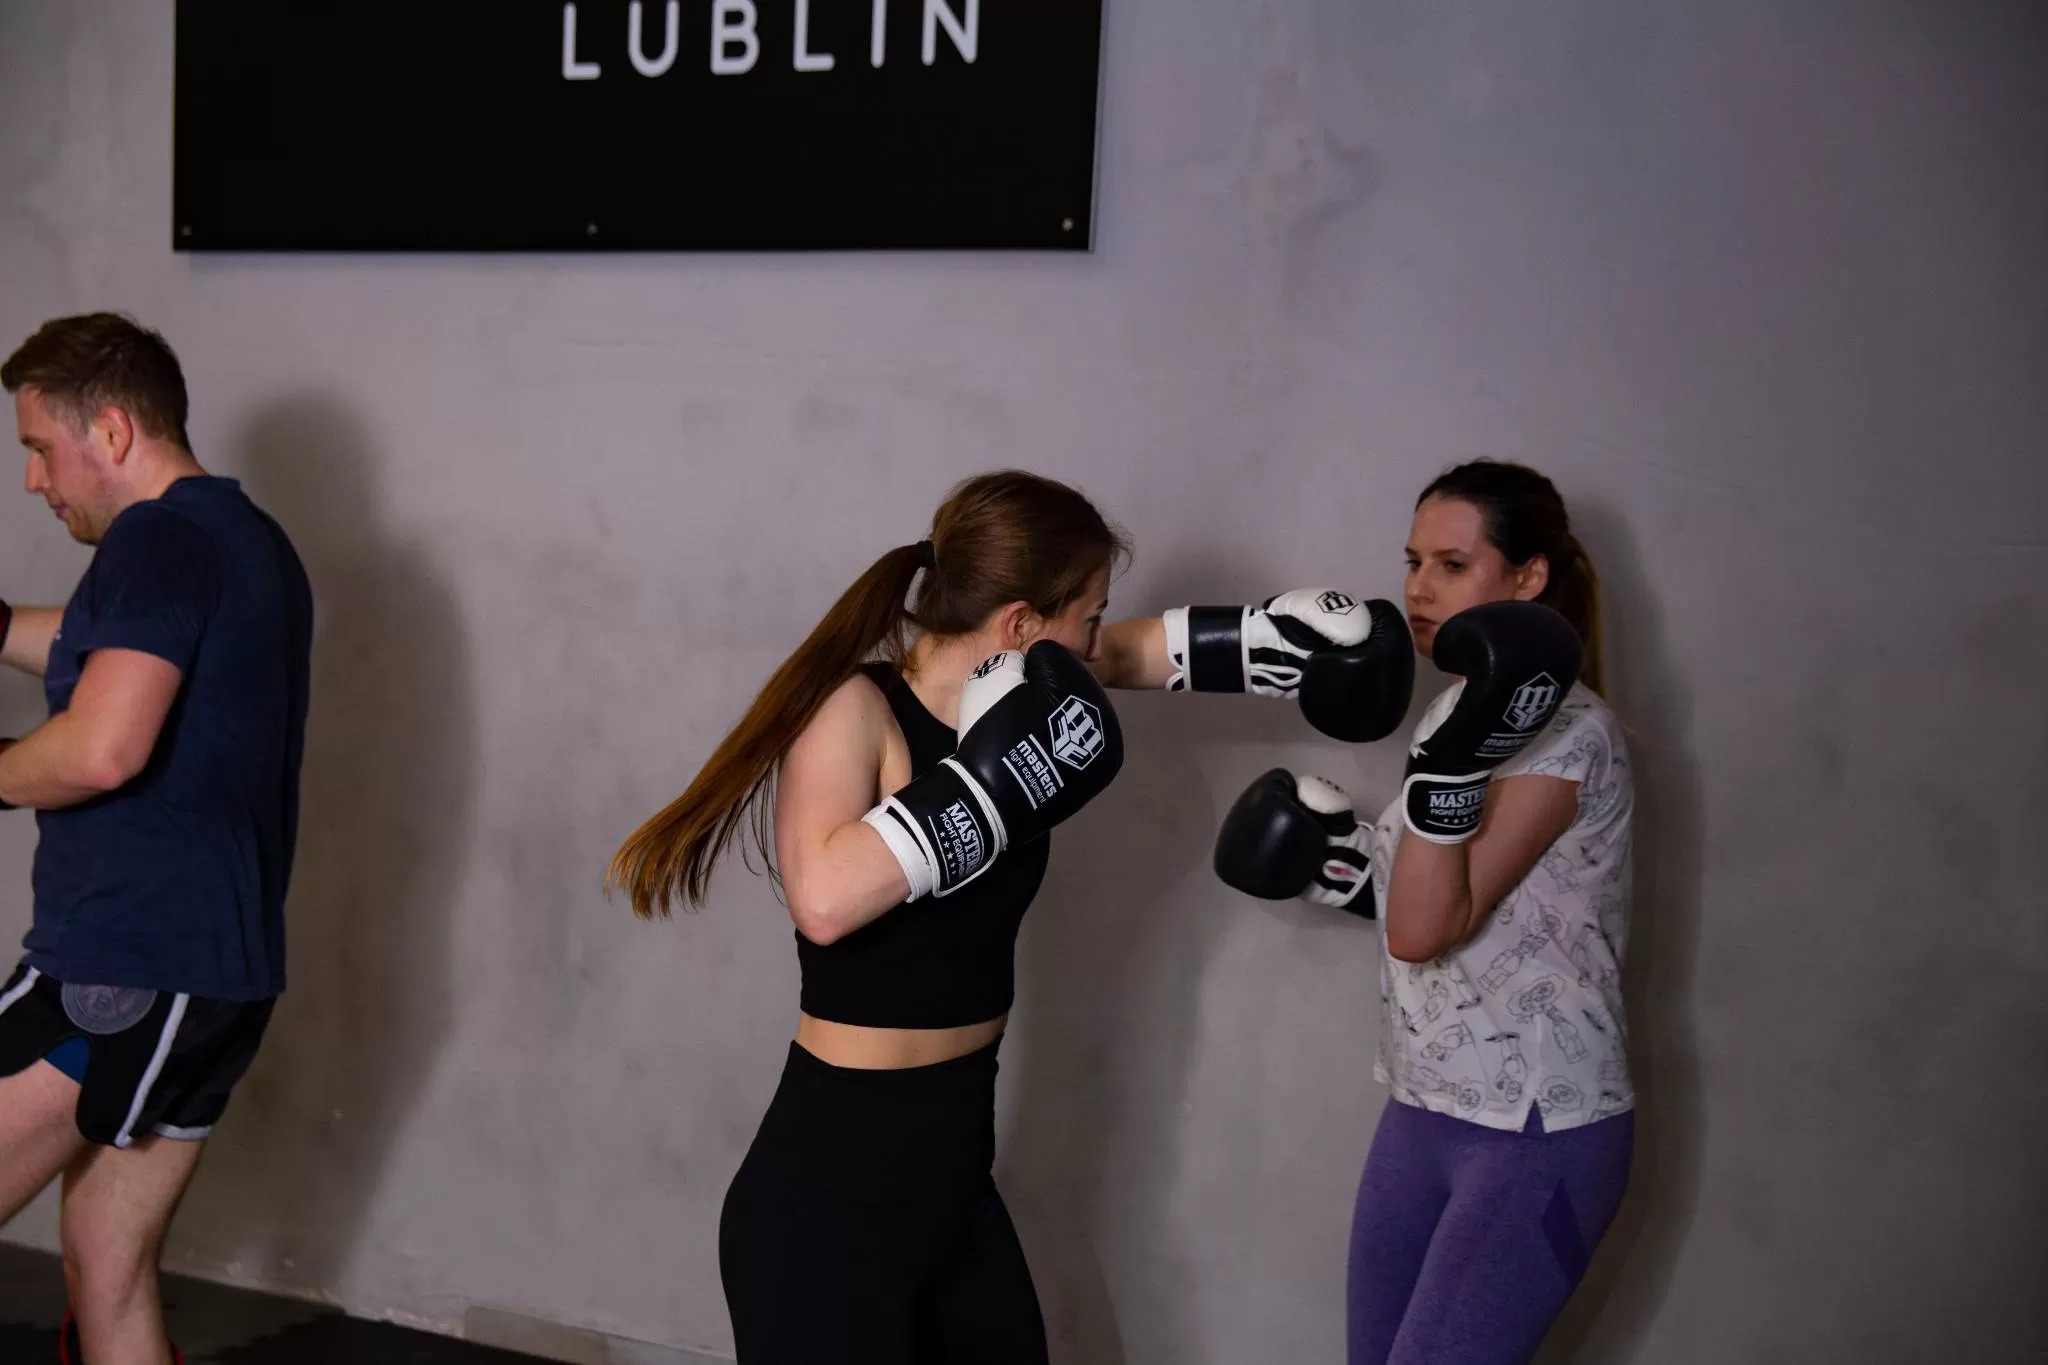 Boks Lublin,boks lublin dla dziewczyn,boks lublin zajęcia indywidualne,boks lublin treningi